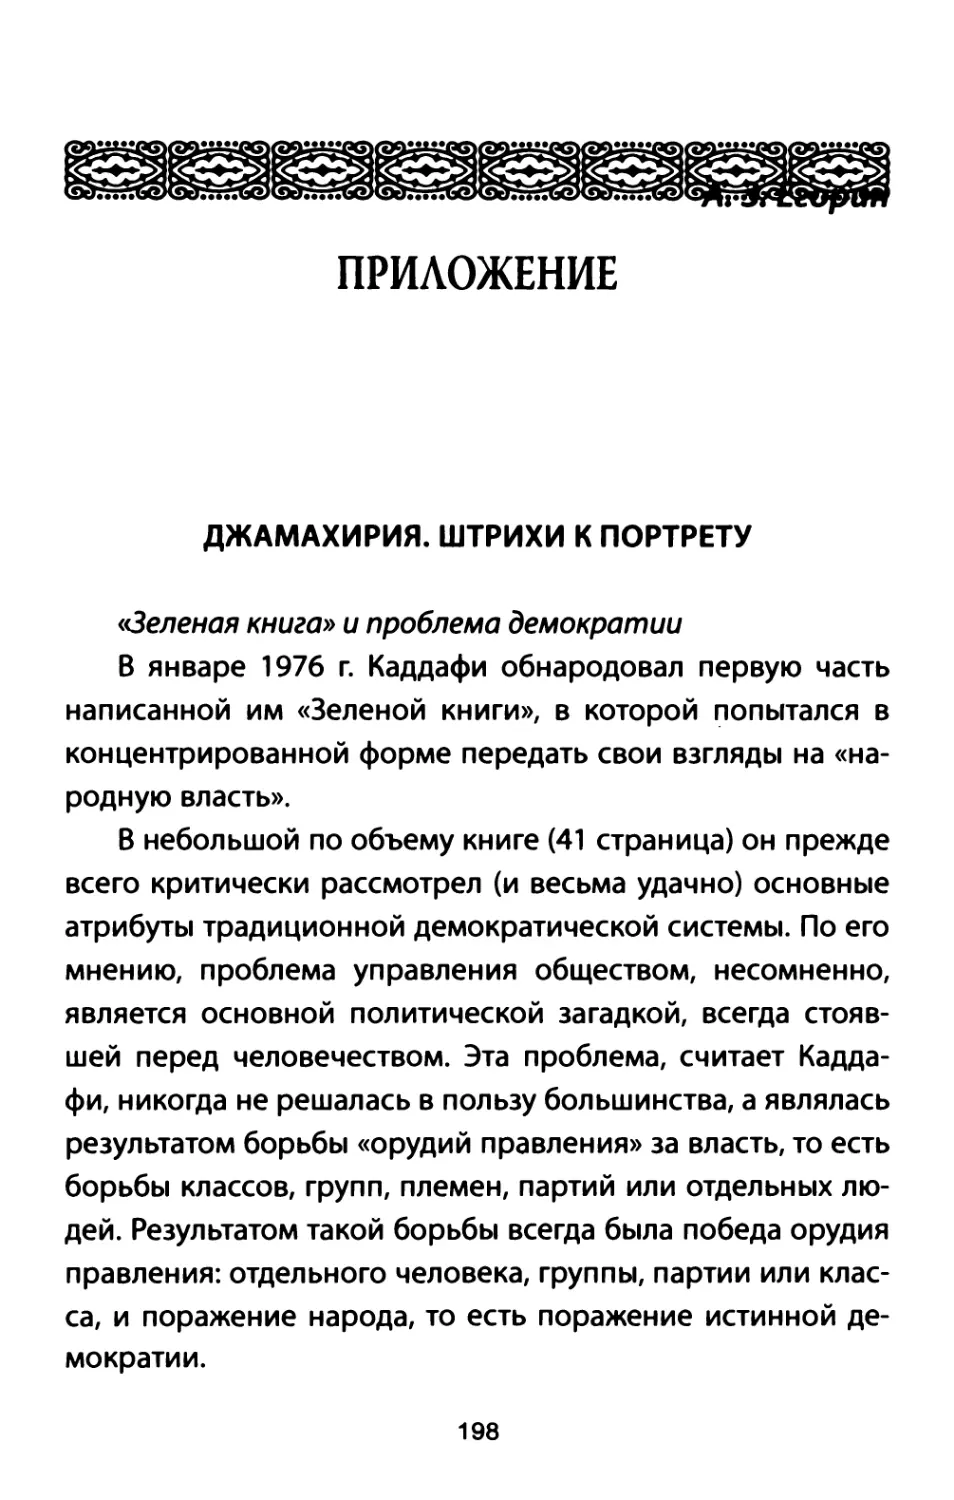 Егорин А. 3. Приложения